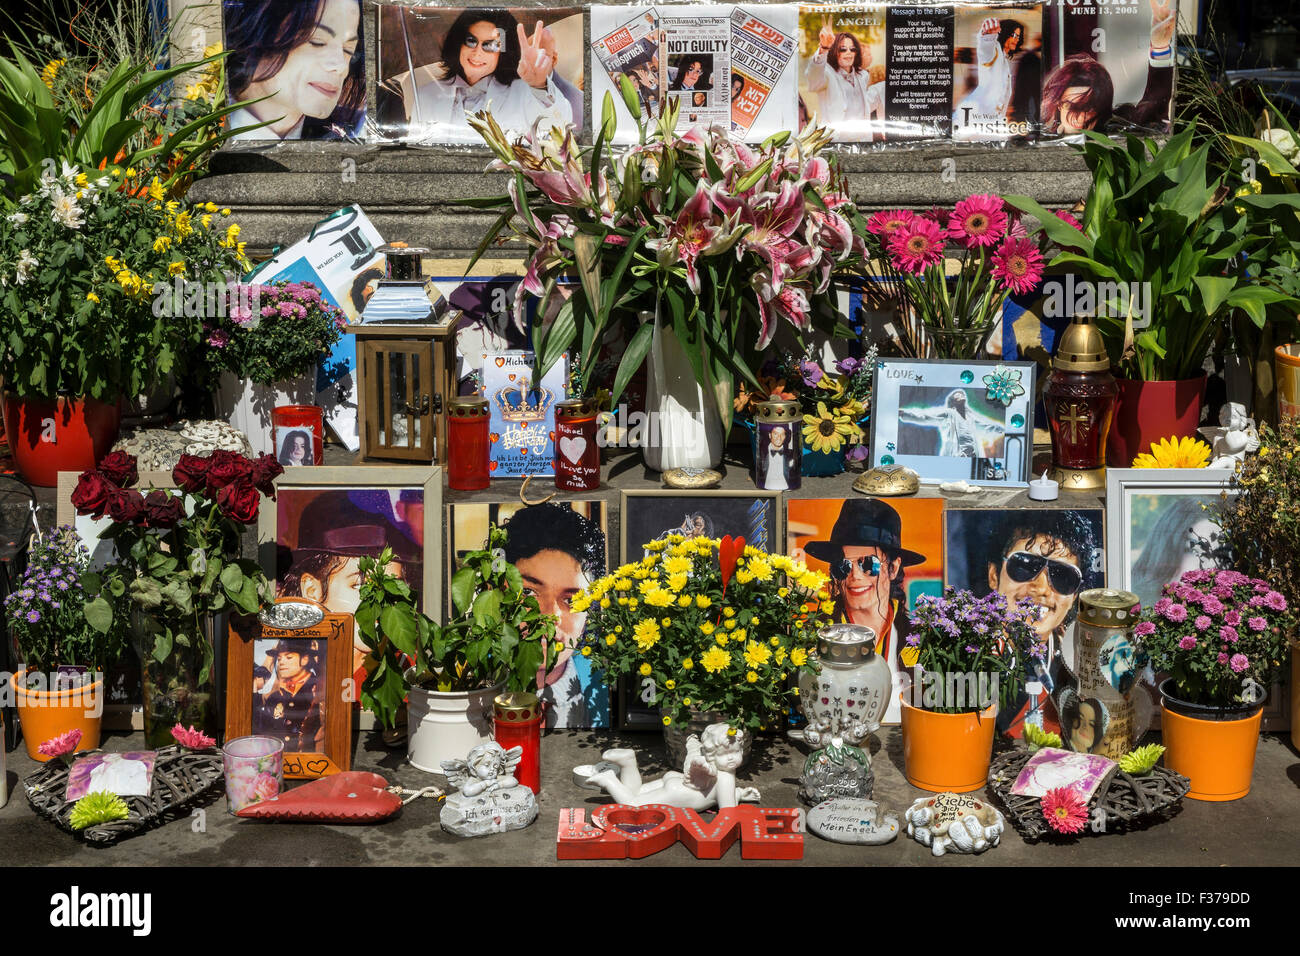 Denkmal für Michael Jackson am Denkmal von Orlando di Lasso, Promenade-Platz, München, Bayern, Deutschland Stockfoto